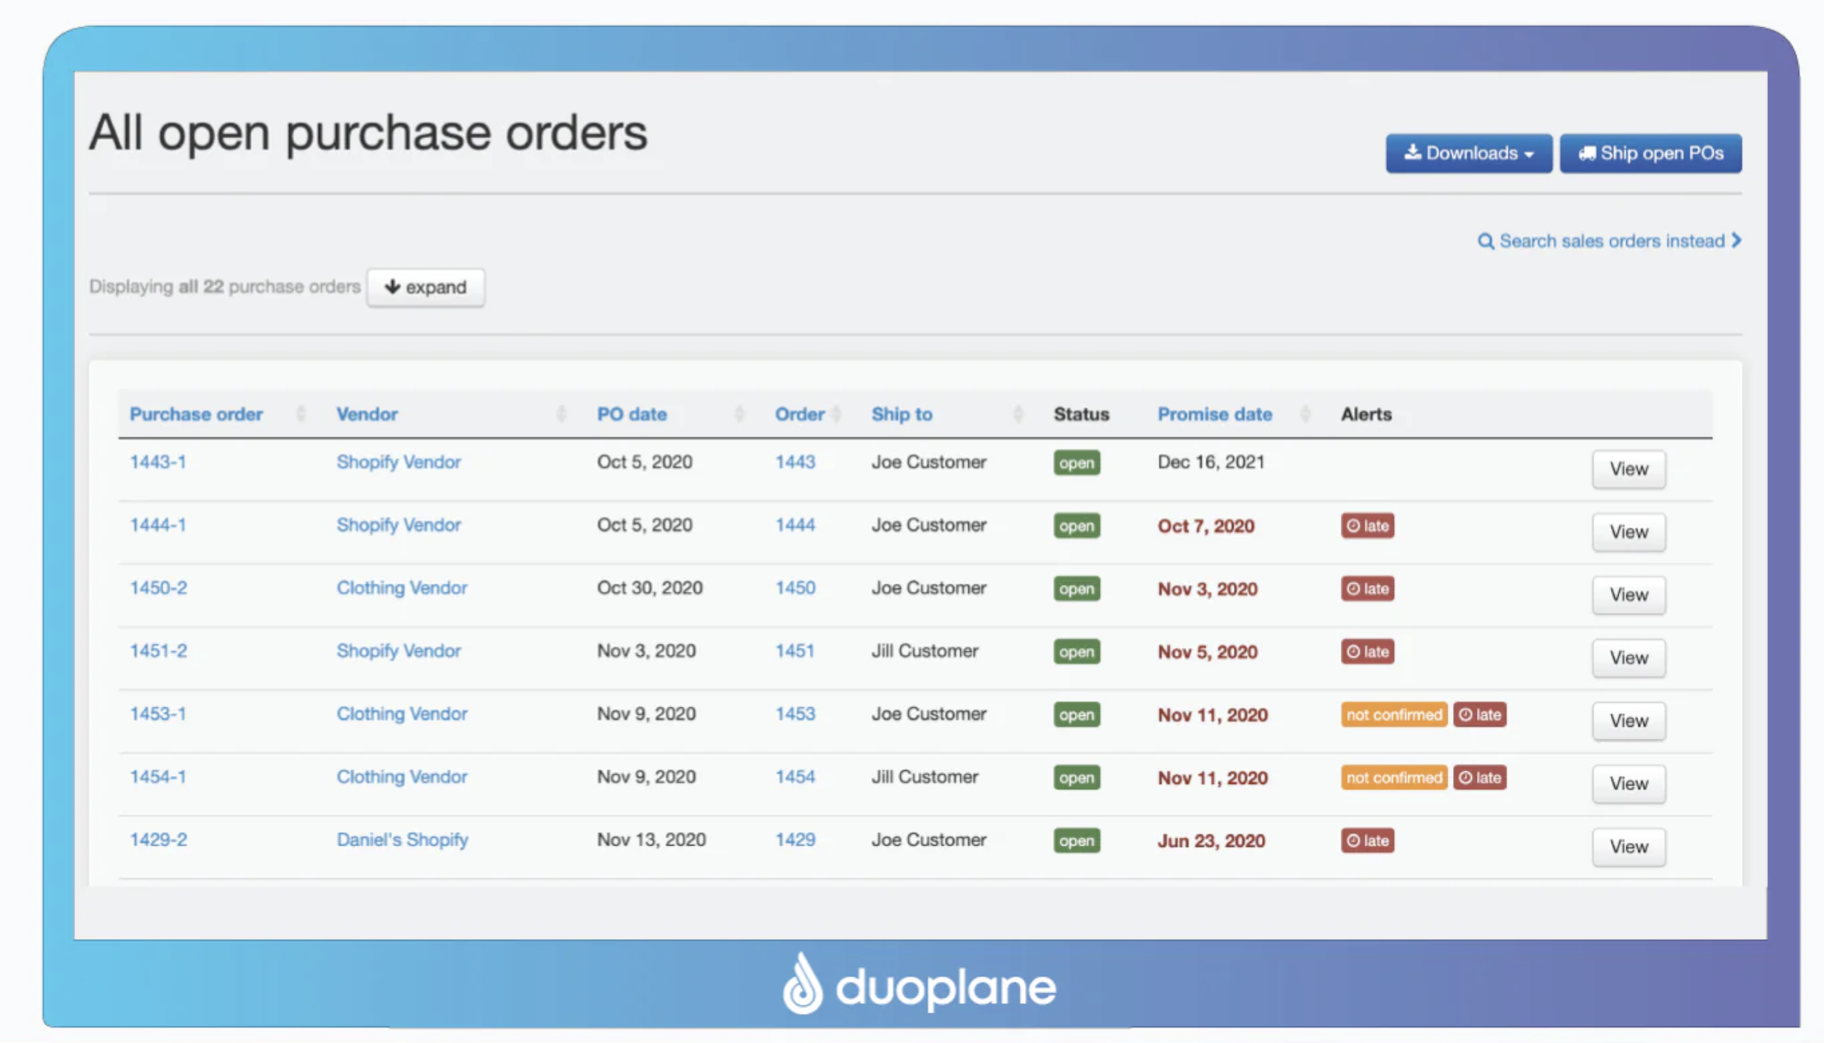 aplicación de dropshipping automatizado: Duoplane